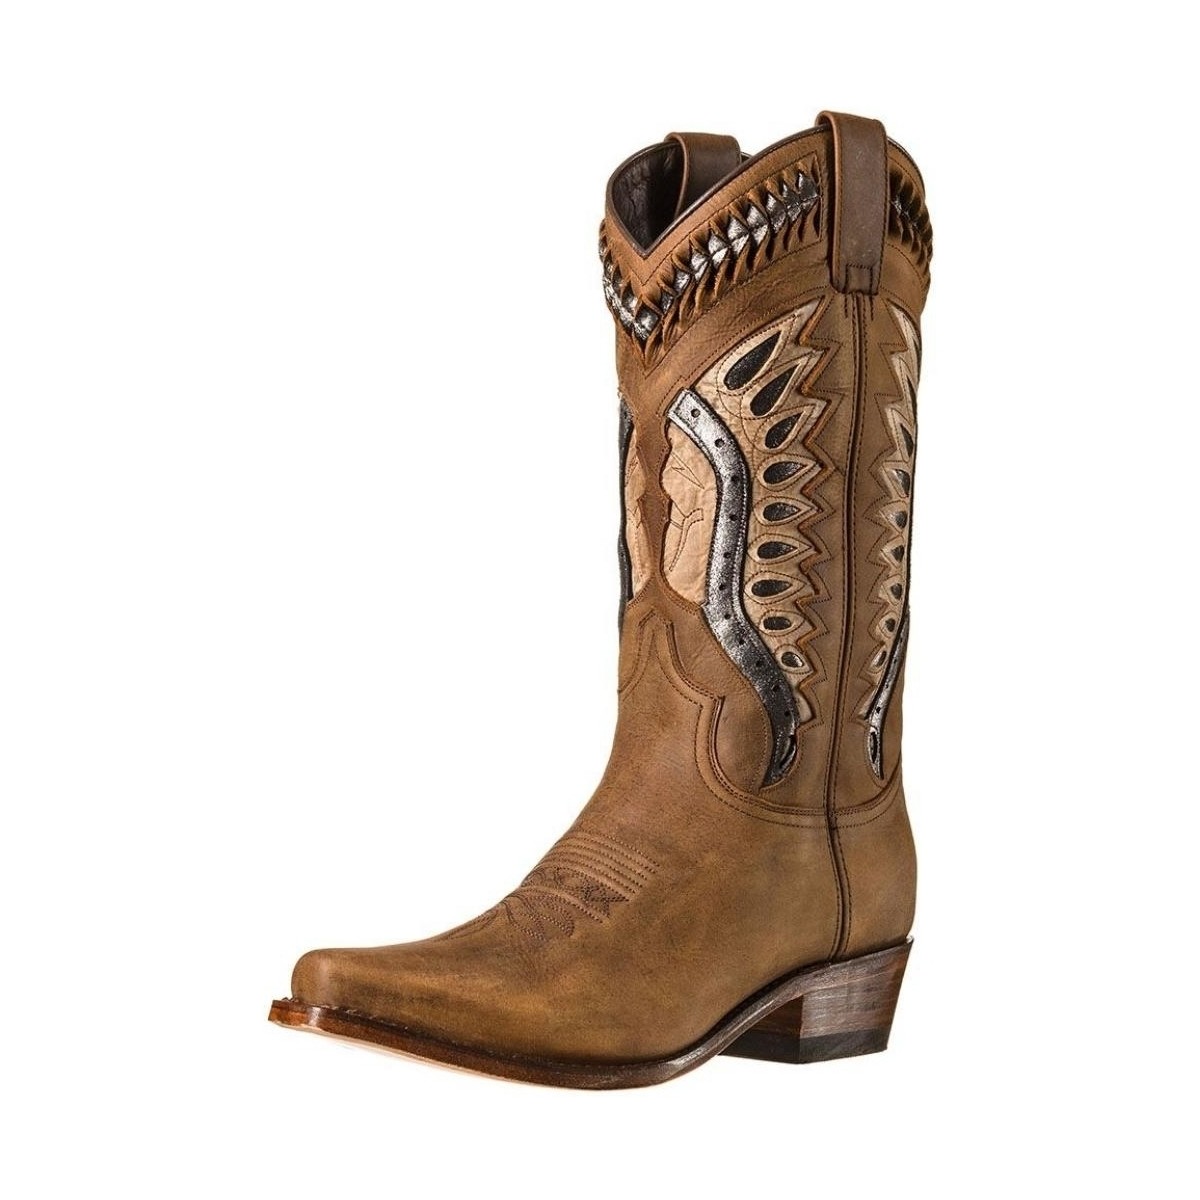 Chaussures Femme Bottes Sendra boots Santiags Femme  Debora Ref 53008 Marron Marron